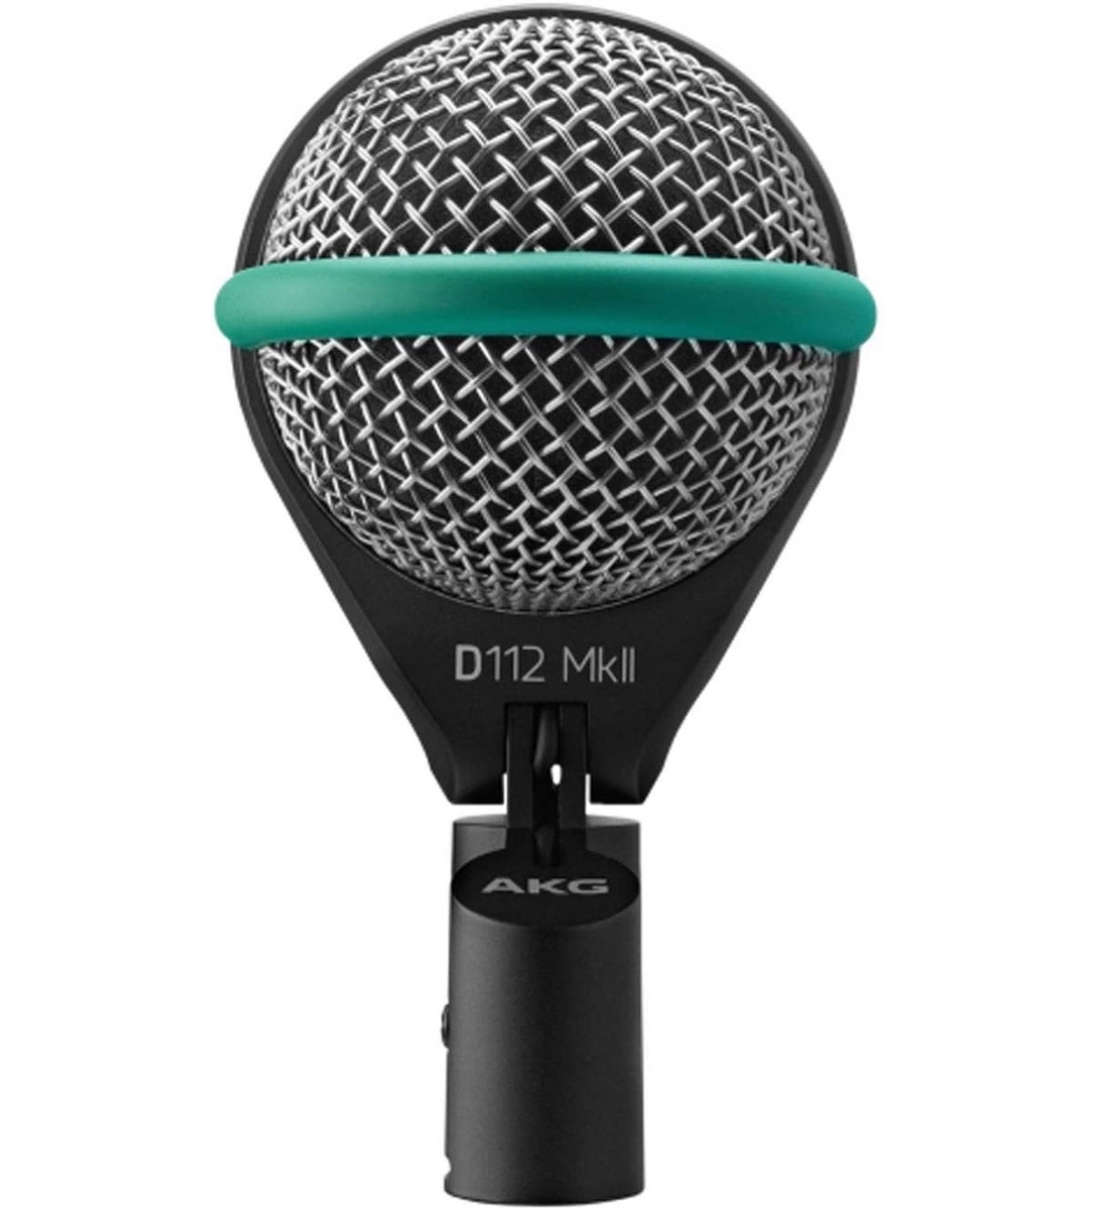 D112 MKII Microfono per Grancassa